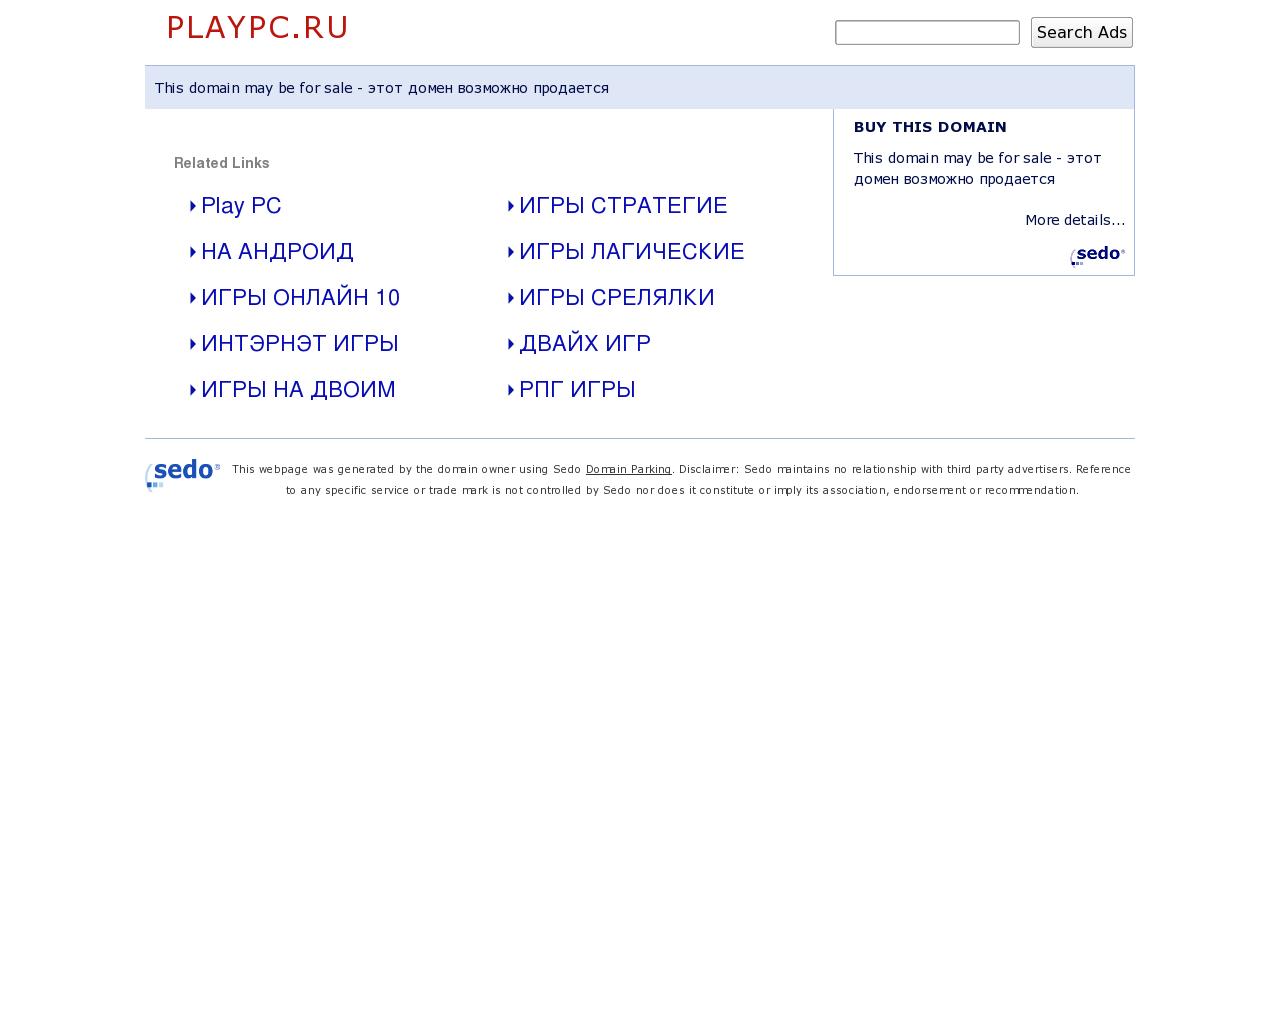 Изображение сайта playpc.ru в разрешении 1280x1024